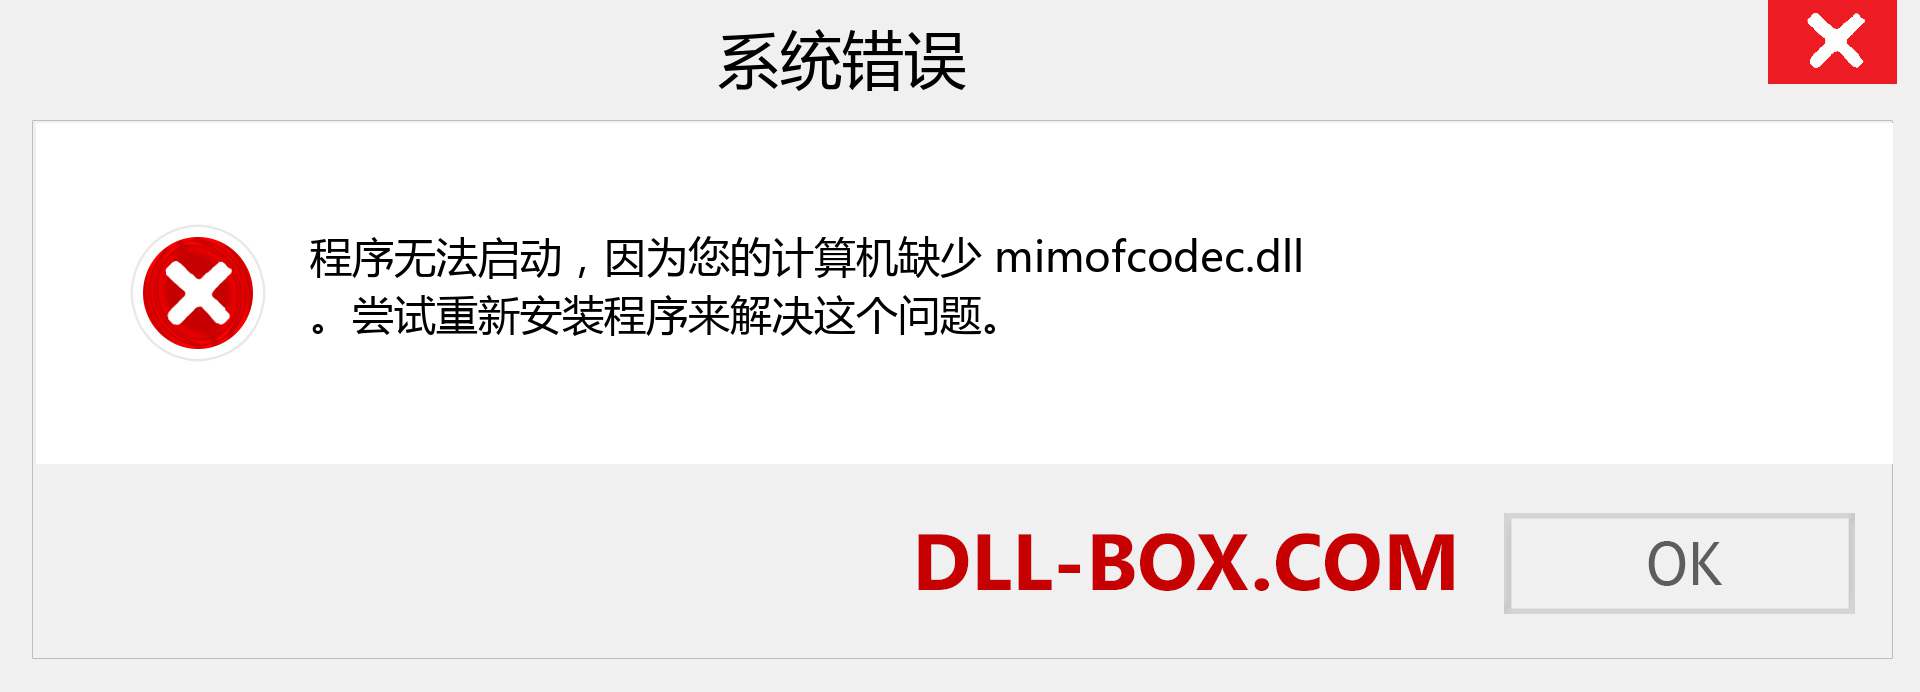 mimofcodec.dll 文件丢失？。 适用于 Windows 7、8、10 的下载 - 修复 Windows、照片、图像上的 mimofcodec dll 丢失错误